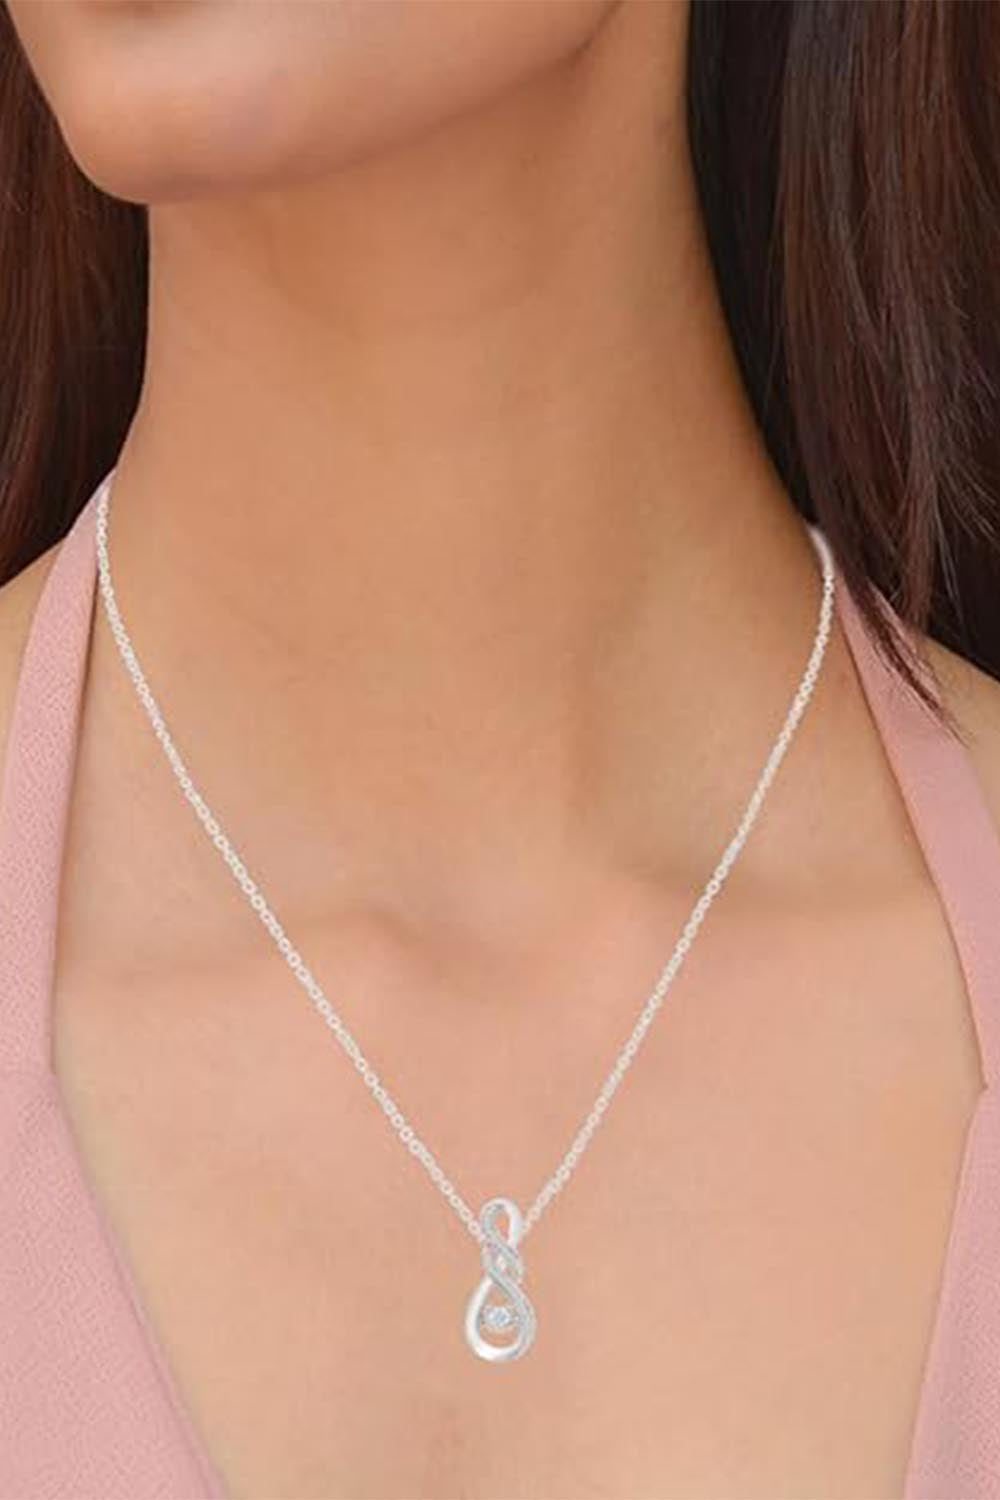 New Yaathi Double Infinity Pendant Necklace, Jewellery